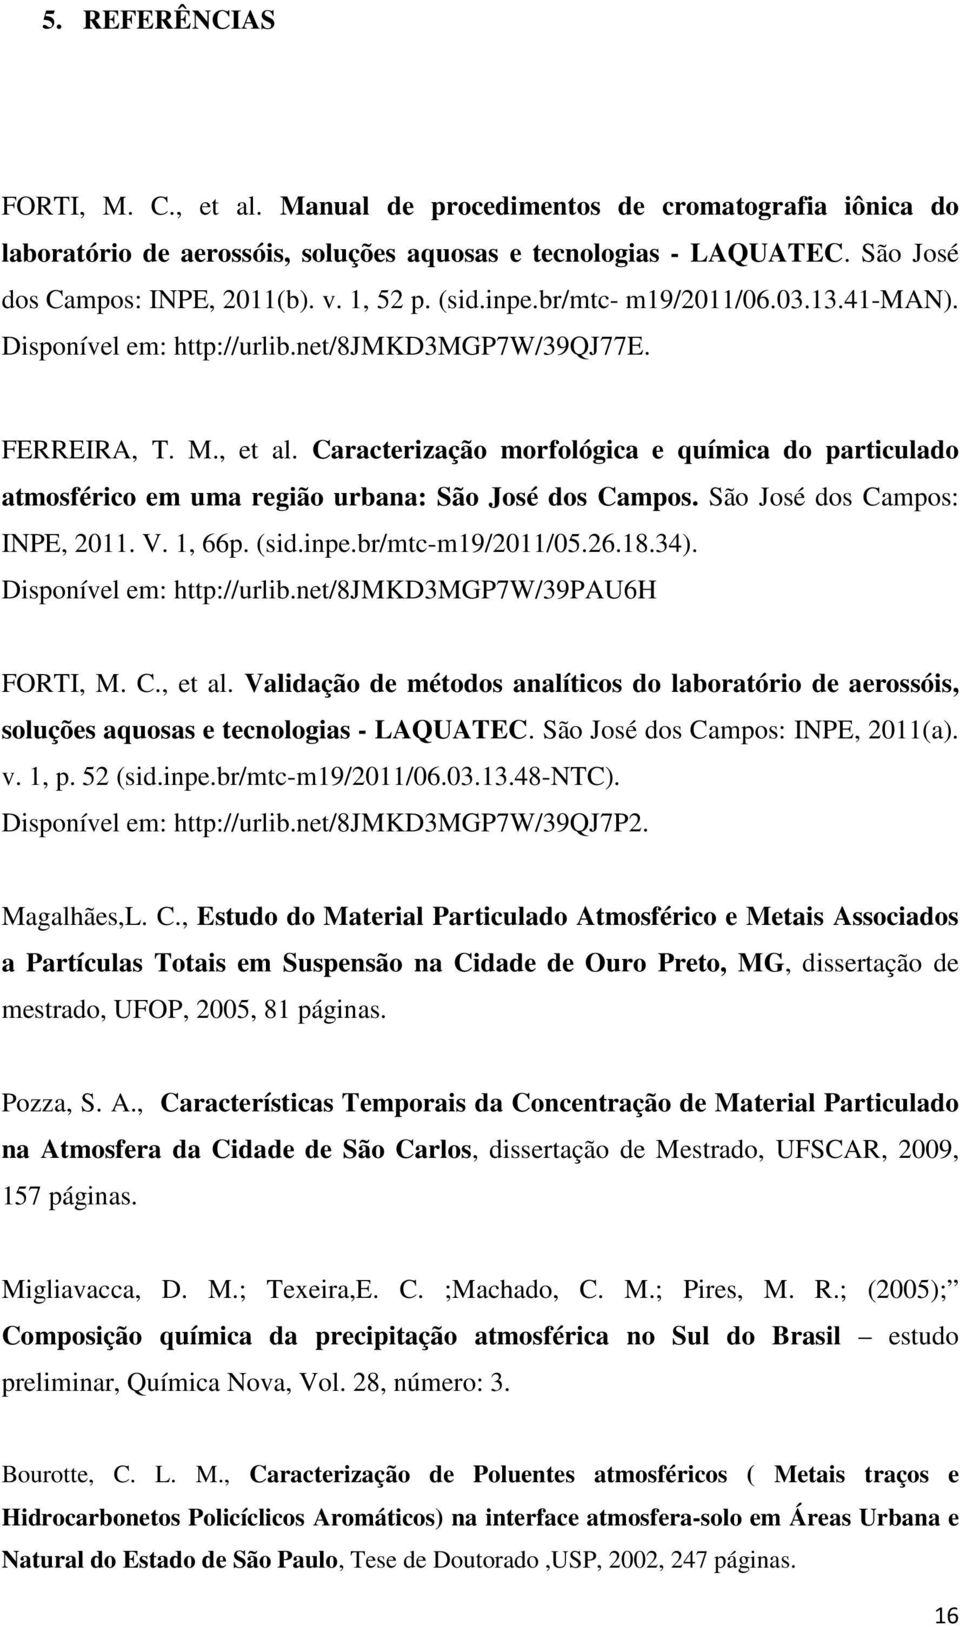 Caracterização morfológica e química do particulado atmosférico em uma região urbana: São José dos Campos. São José dos Campos: INPE, 2011. V. 1, 66p. (sid.inpe.br/mtc-m19/2011/05.26.18.34).